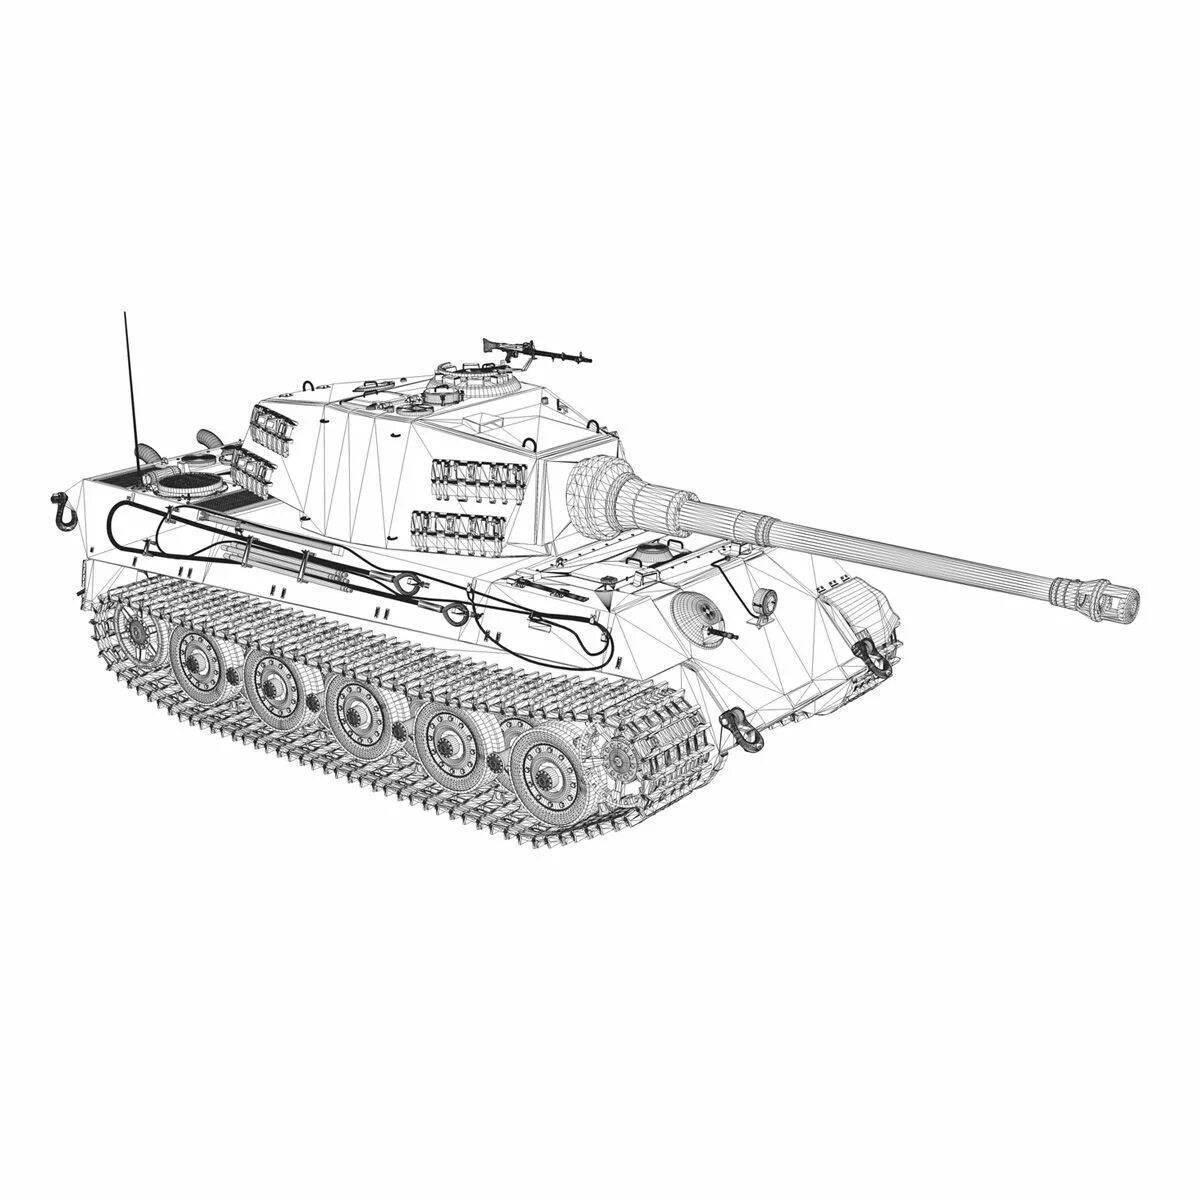 PZKPFW vi Ausf h1 Tiger чертежи